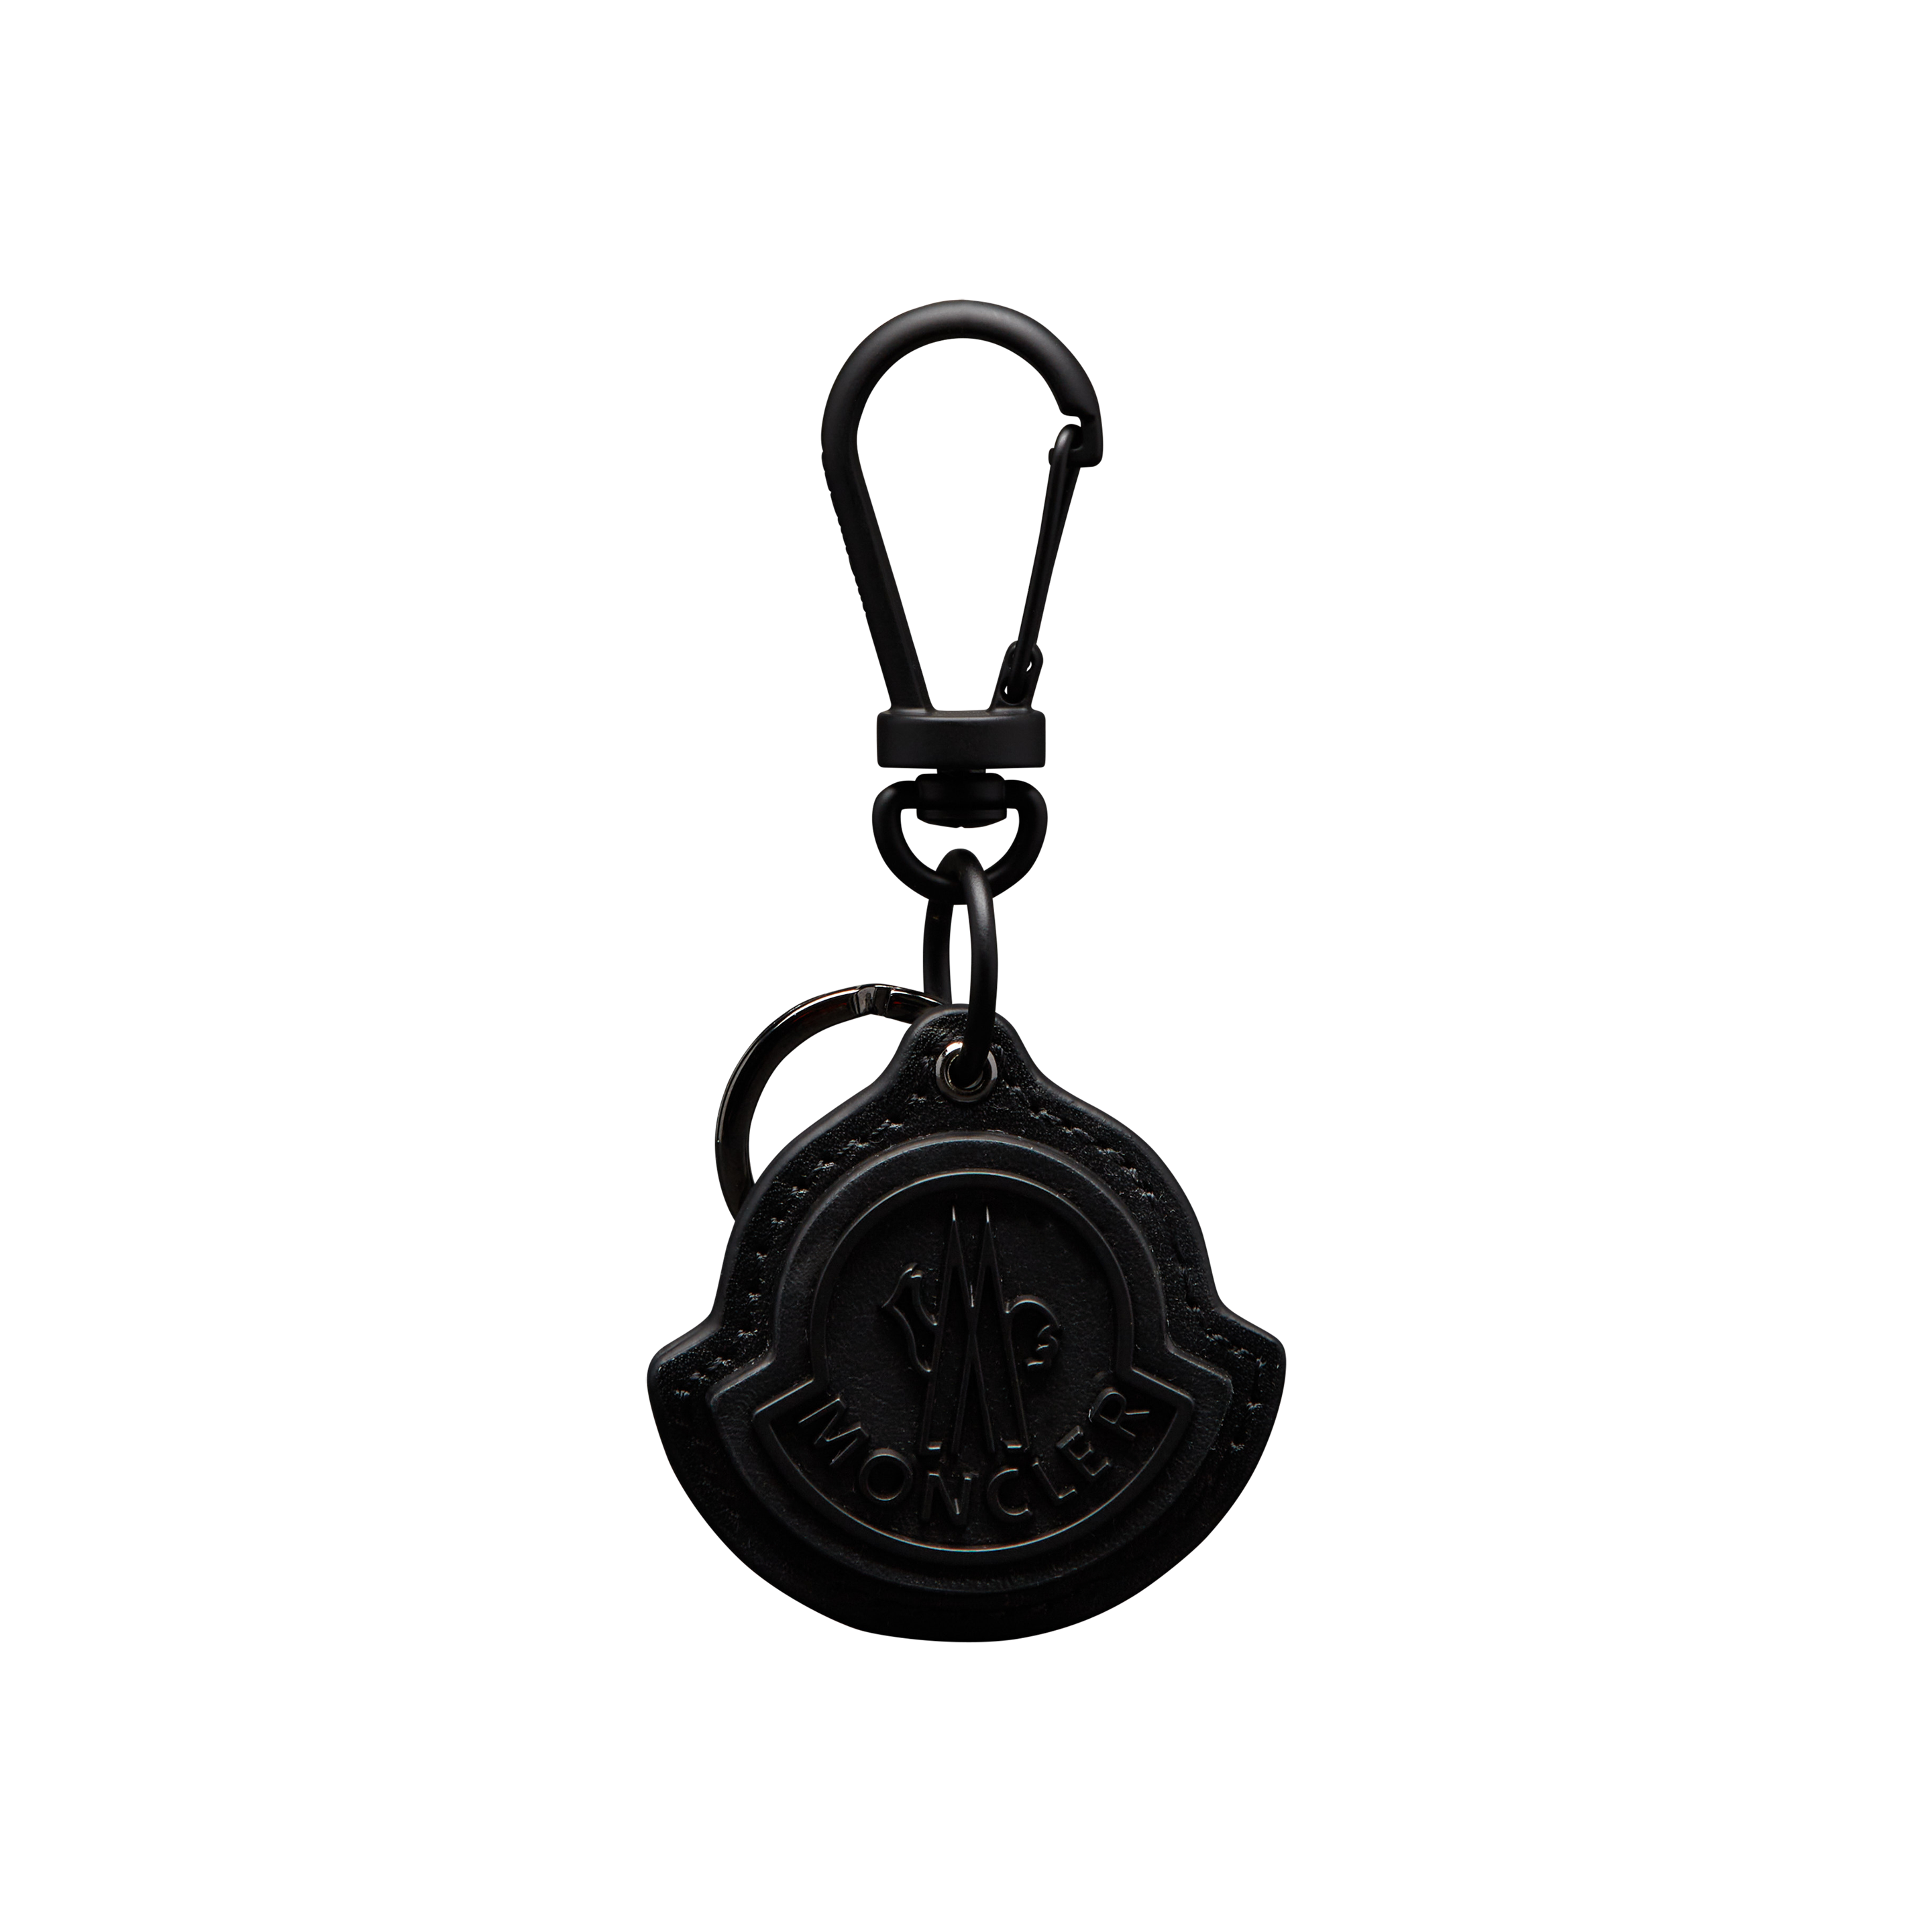 Moncler Collection Logo Key Ring Black